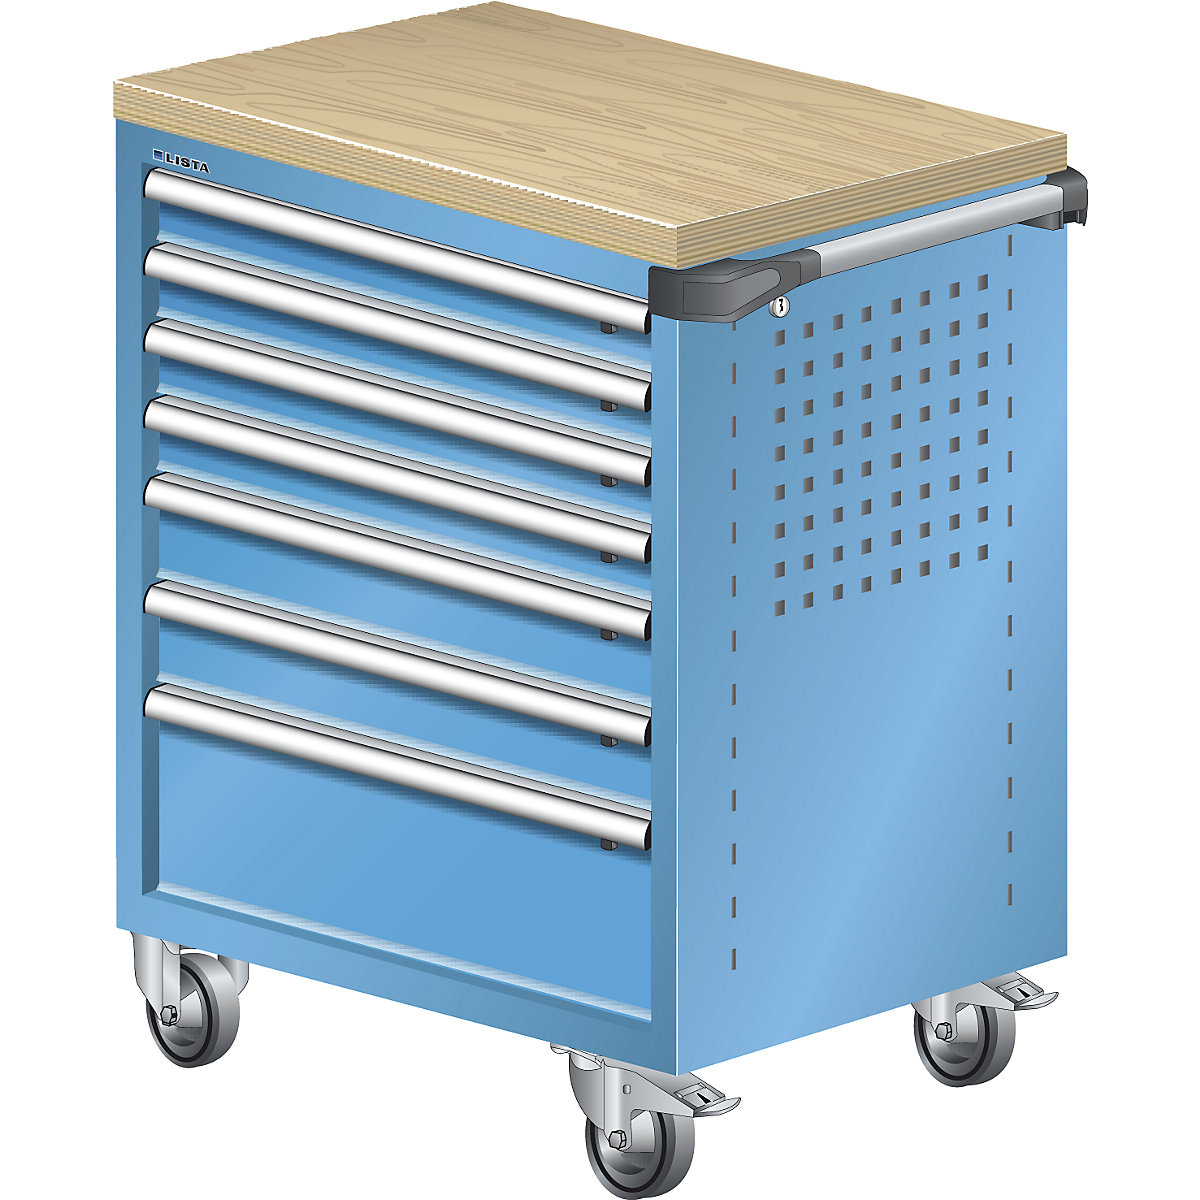 Werkplaatswagen – LISTA, met houtafdekking van multiplex 40 mm, 7 laden, blauw-4